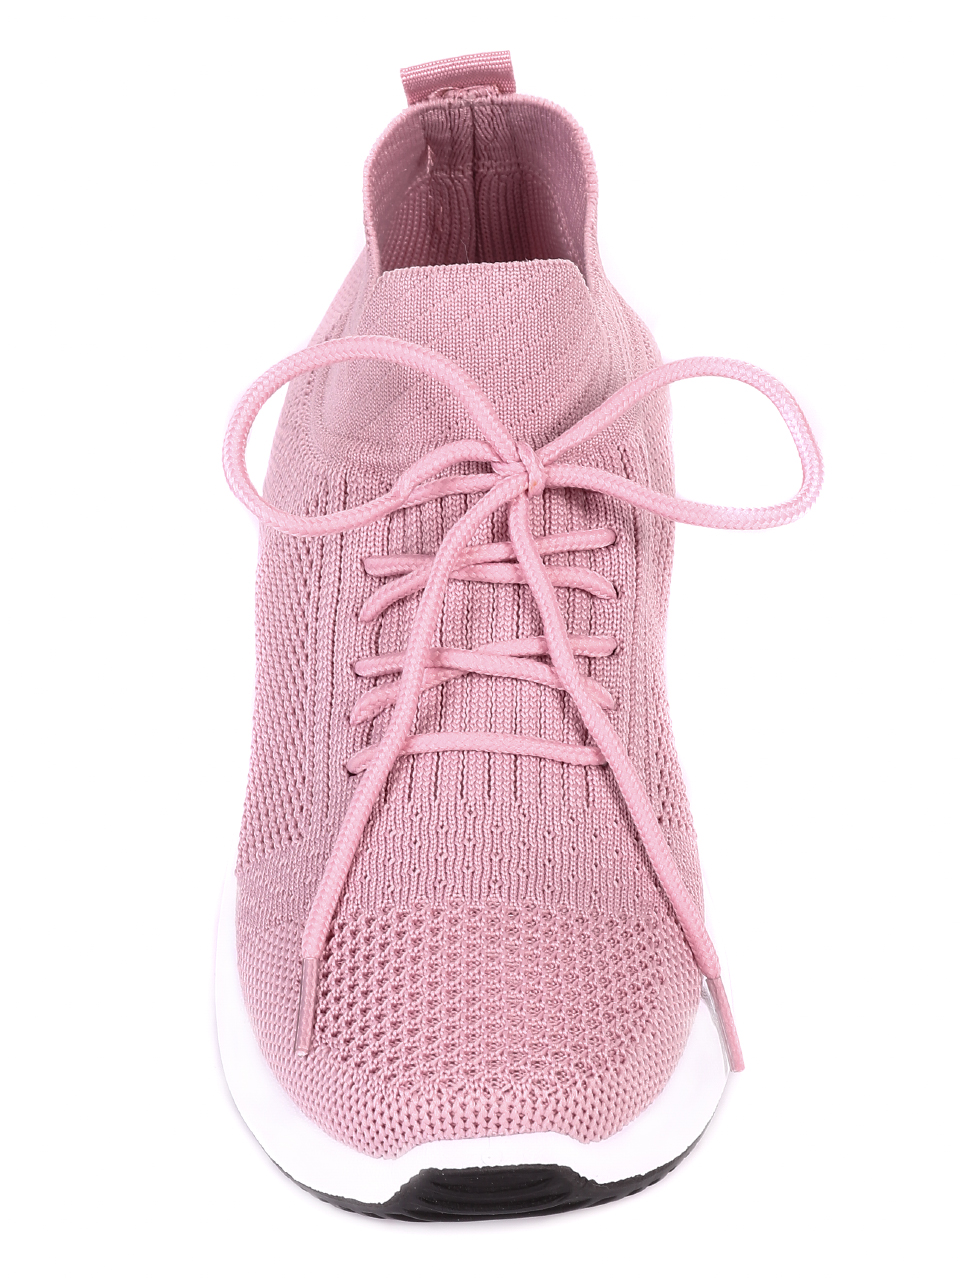 Ежедневни дамски обувки от текстил в розово 3U-21007 pink